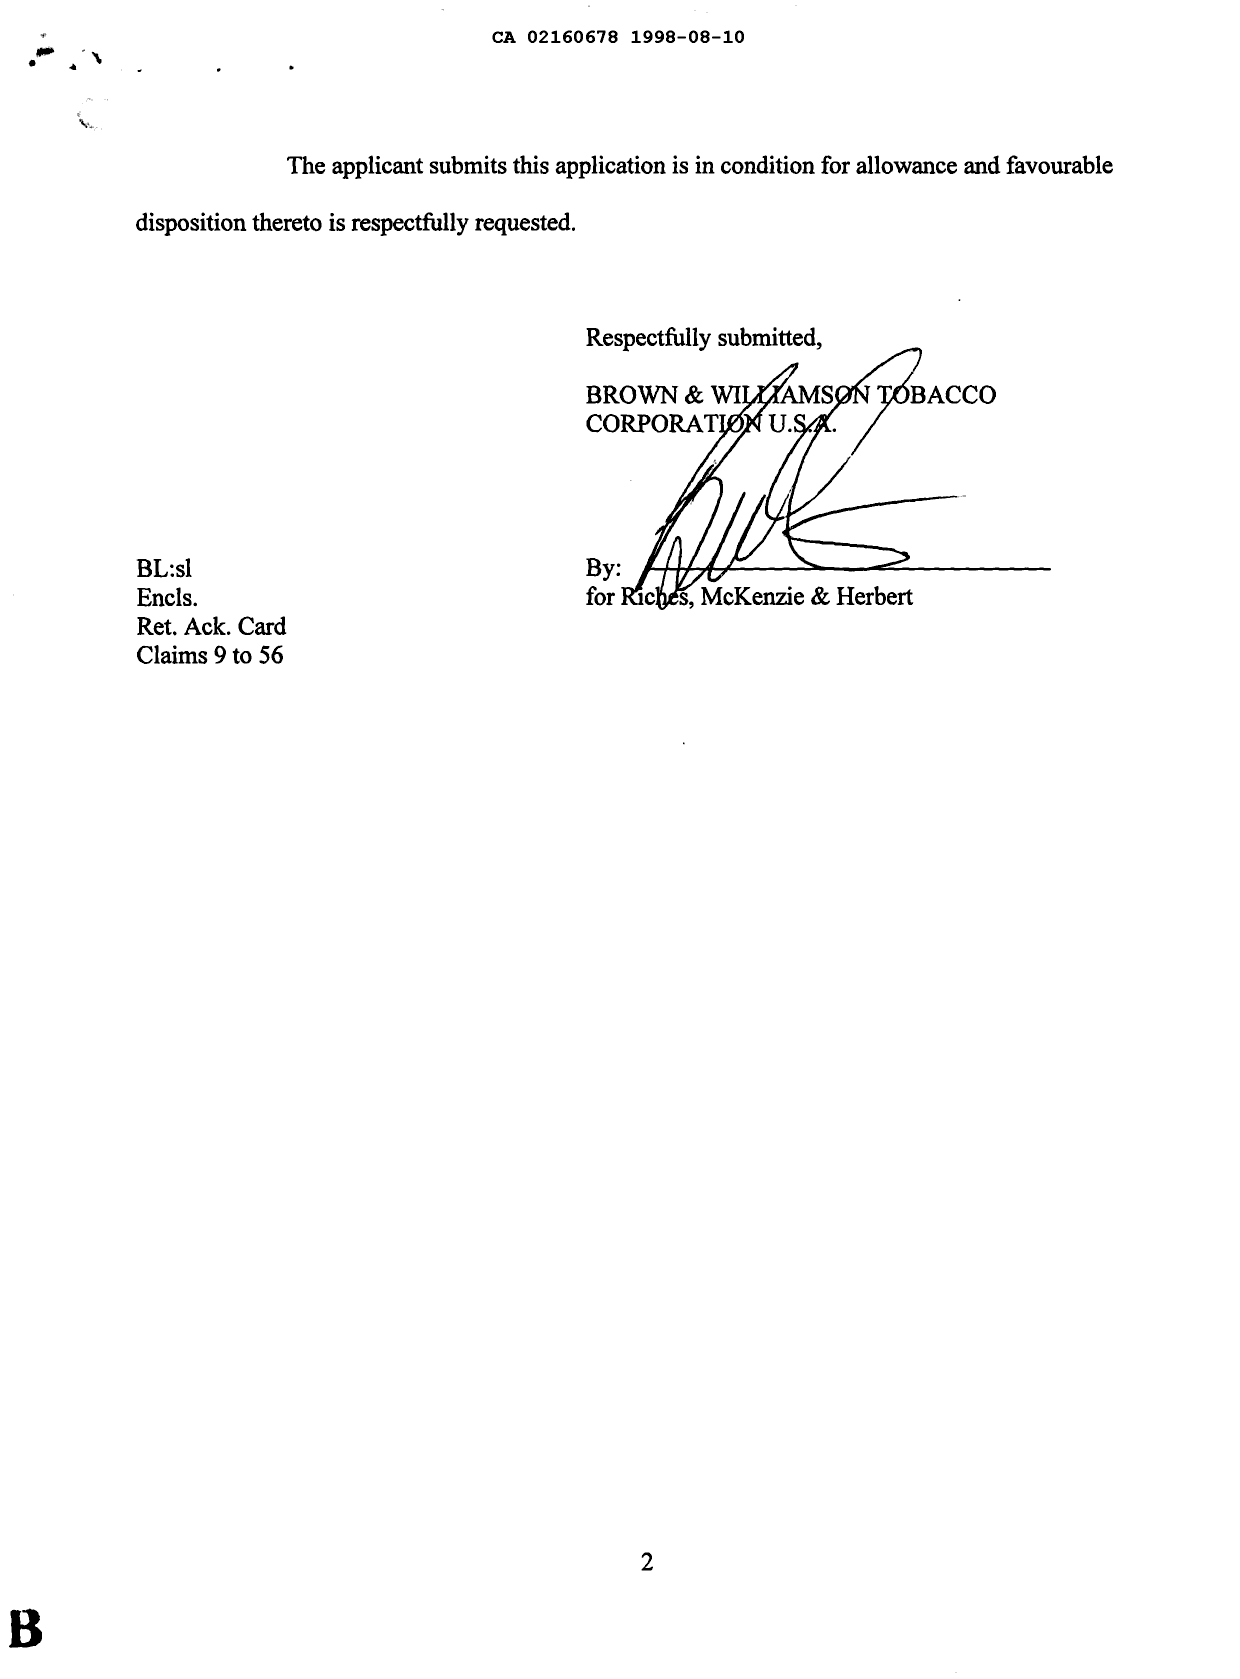 Document de brevet canadien 2160678. Poursuite-Amendment 19980810. Image 2 de 2